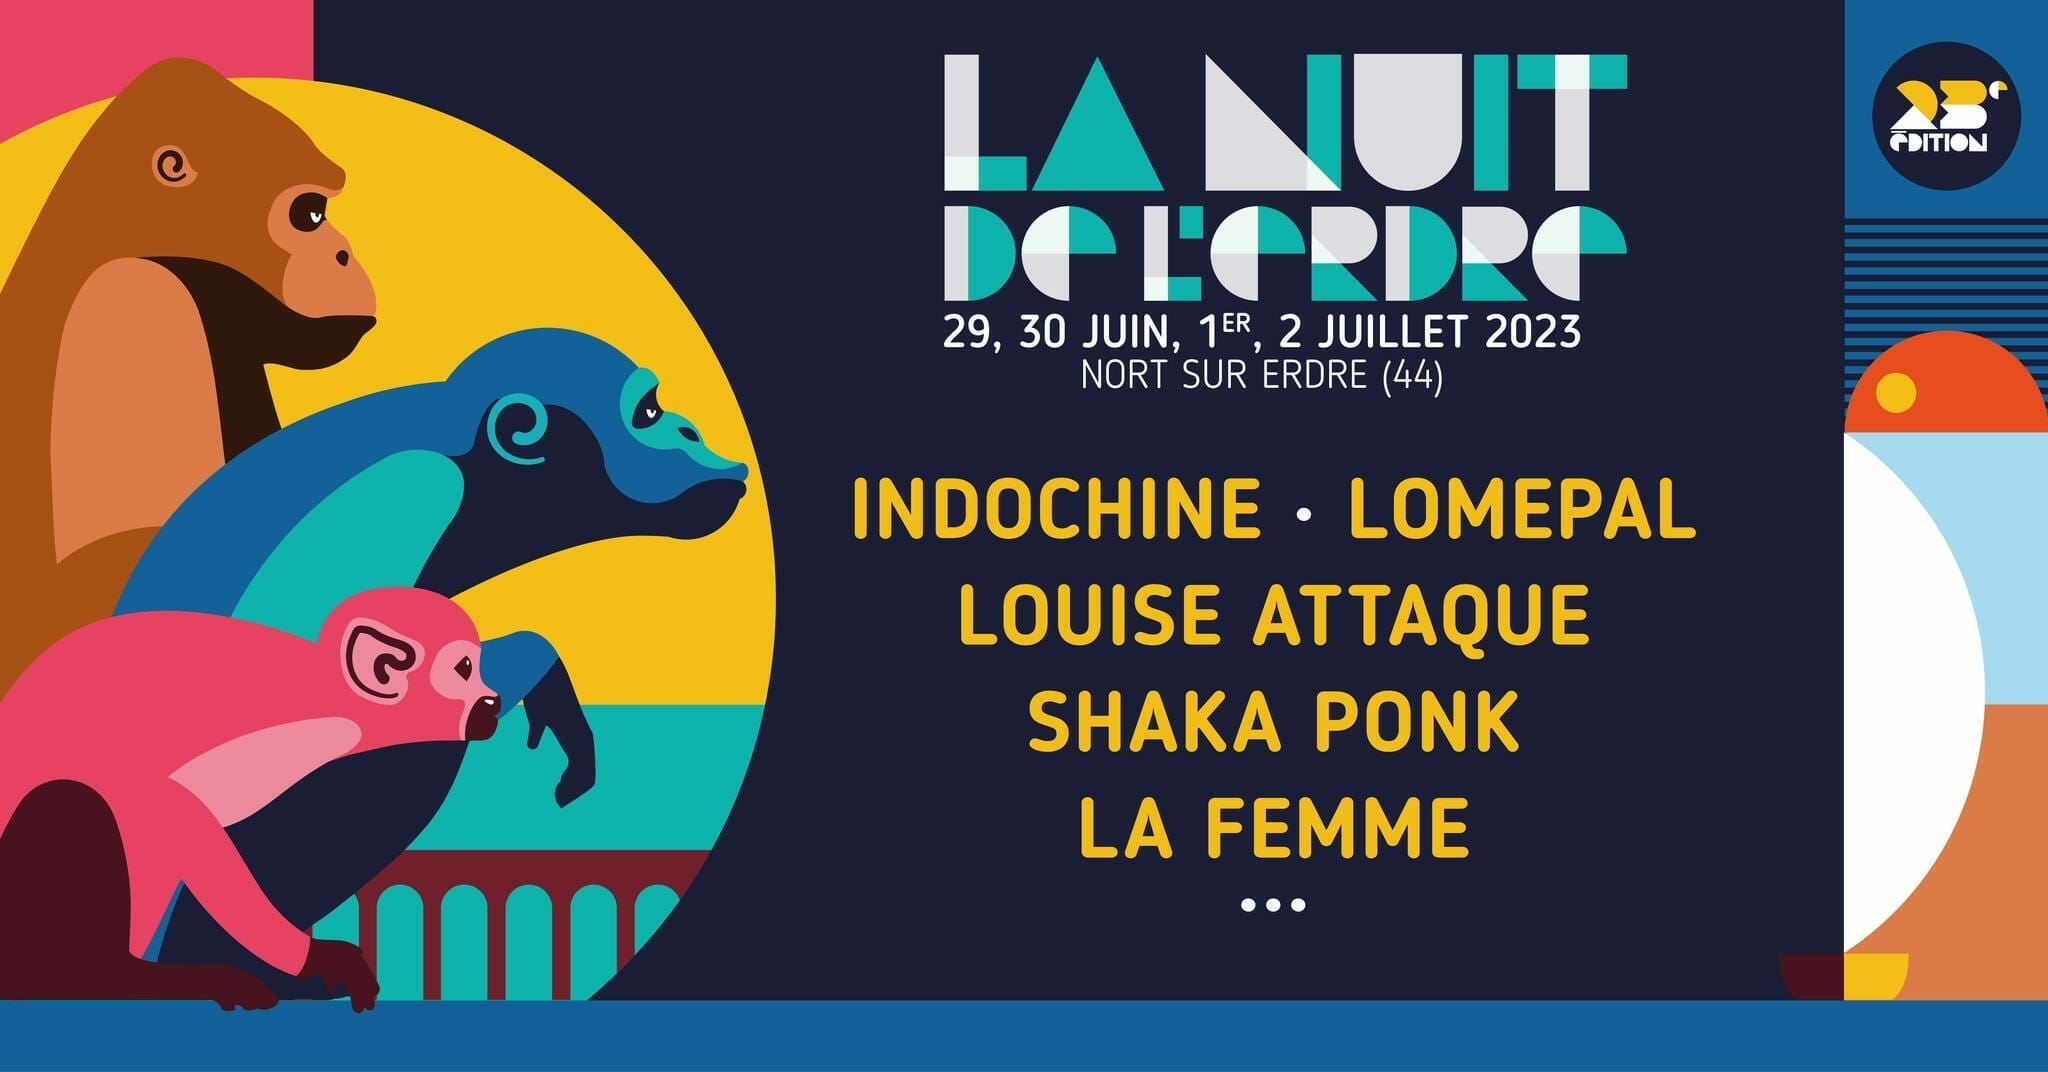 Festival La Nuit de l’Erdre, du 29 juin au 2 juillet 2023 à Nort-sur-Erdre (44)